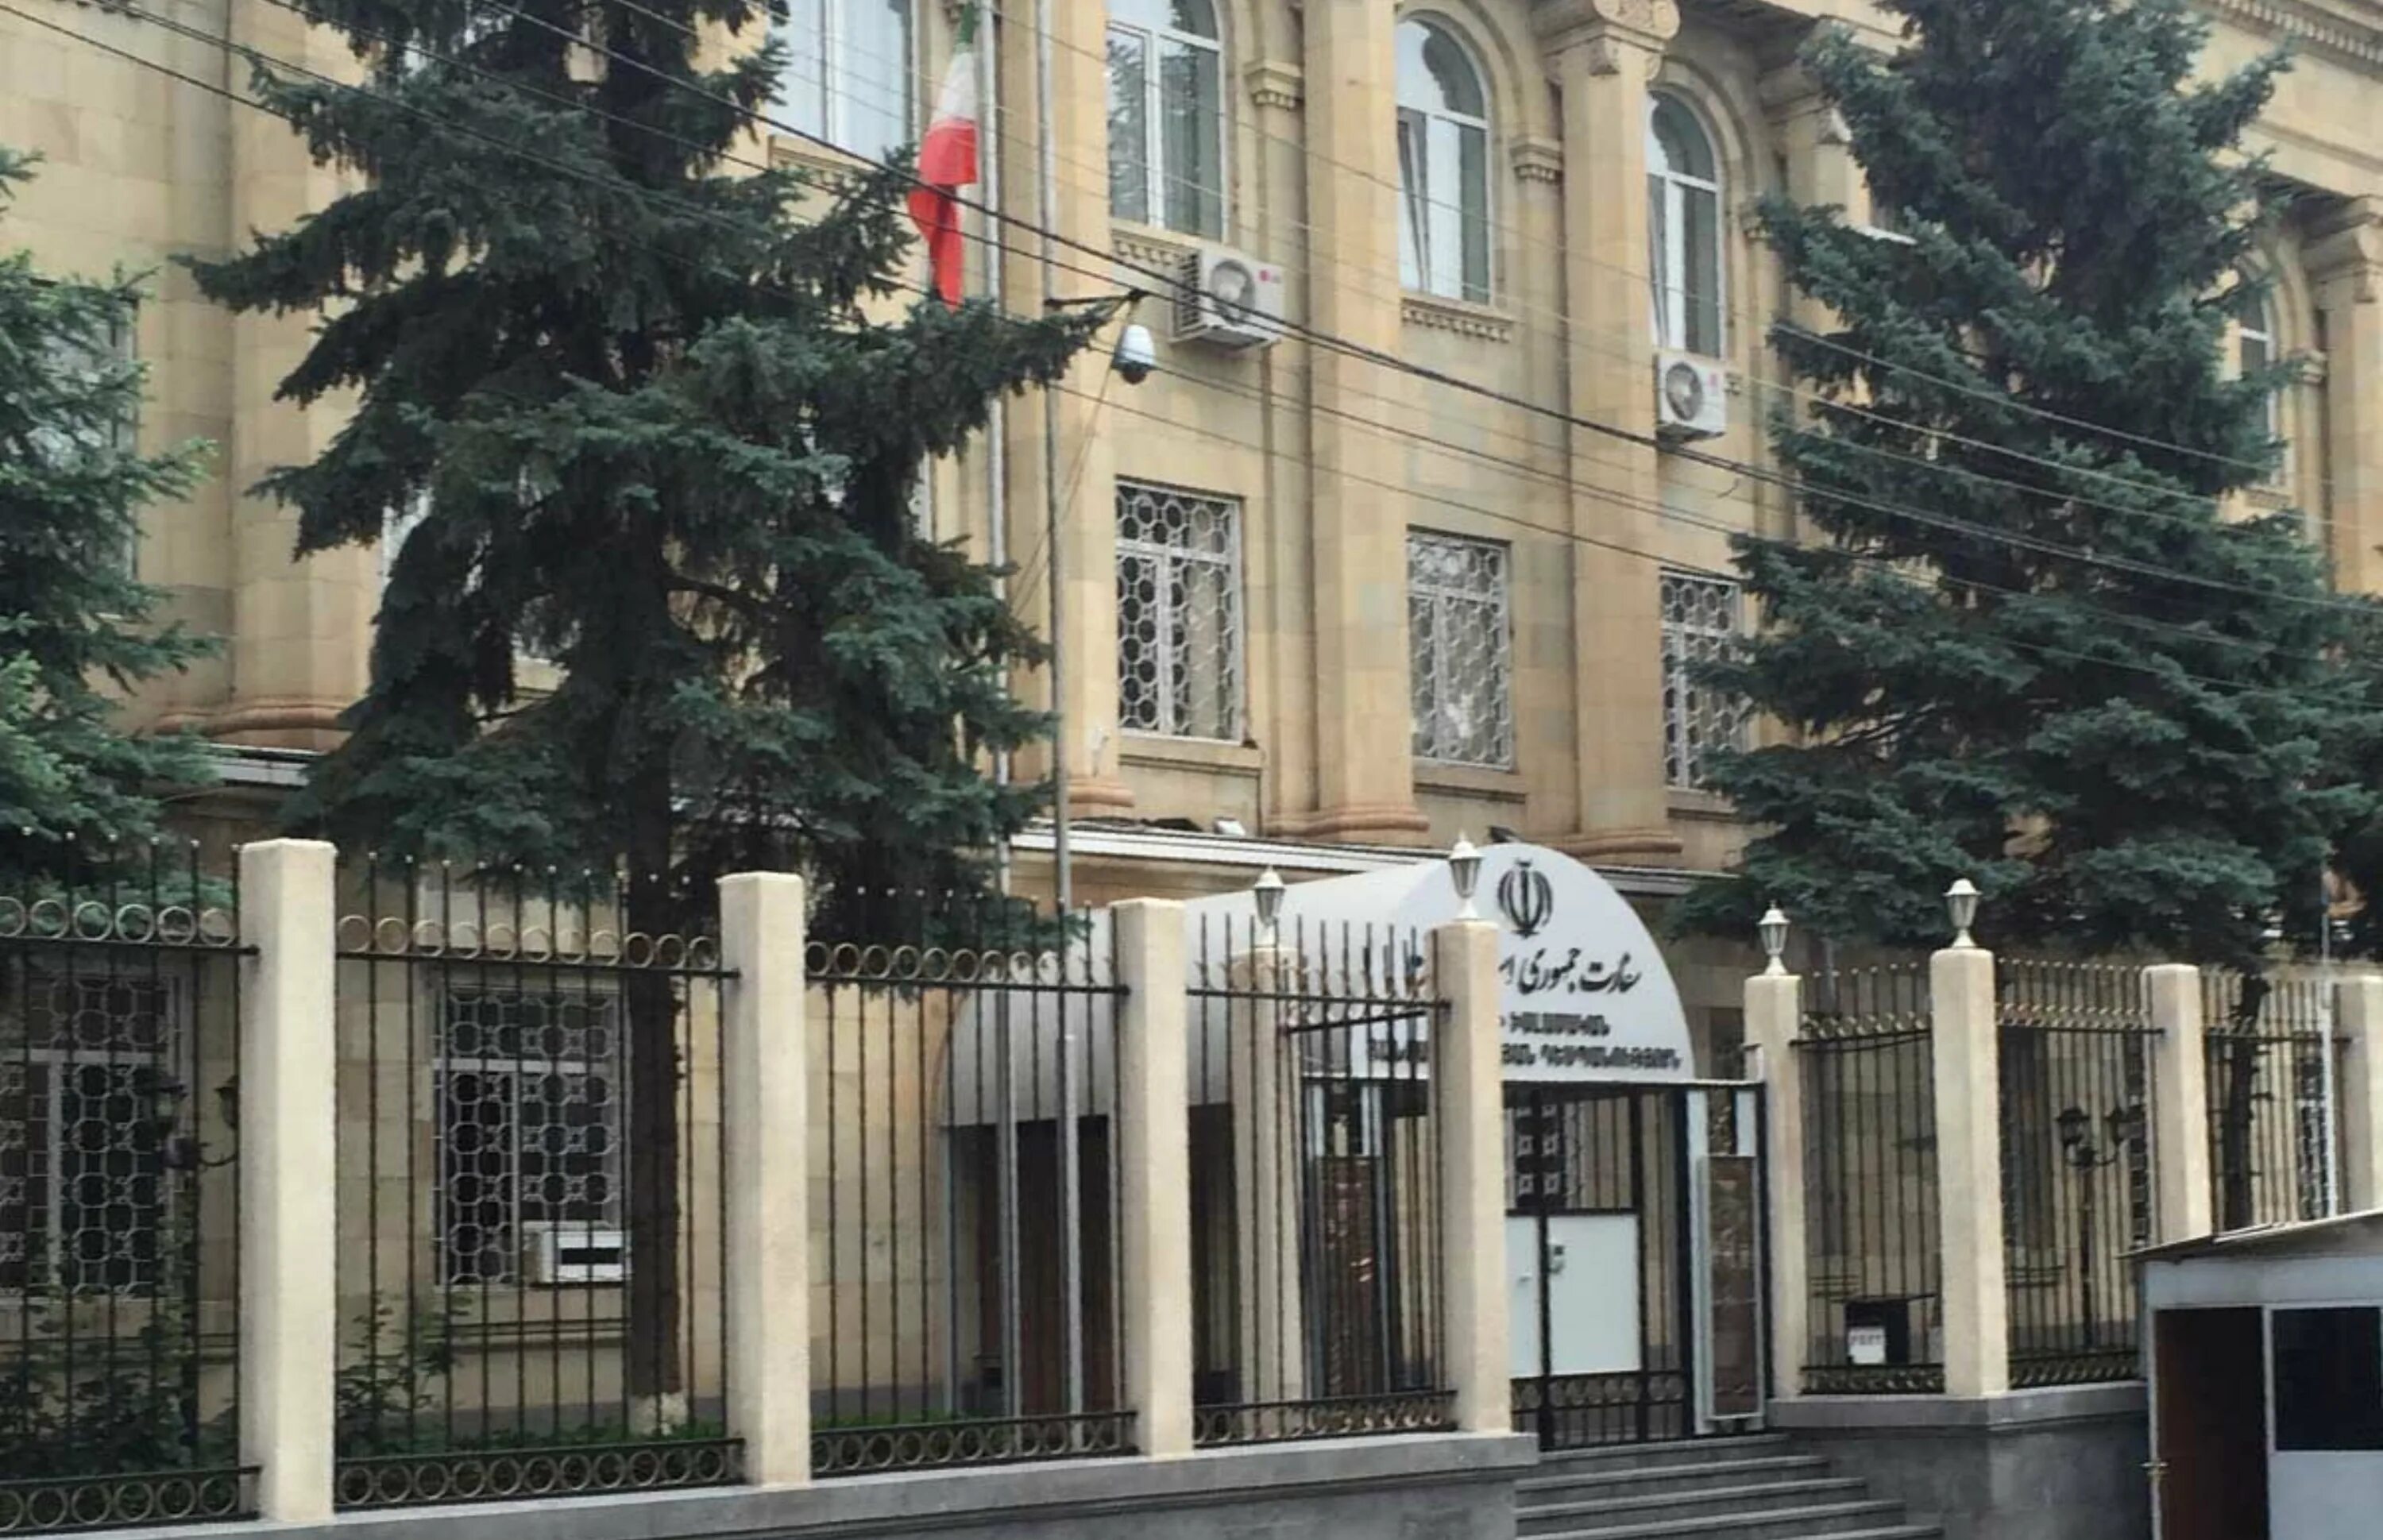 Посольство Ирана в Ереване. Покровский бульвар 7 посольство Ирана. Посольство Ирана в Ереване здание. Посольство России в Ереване.